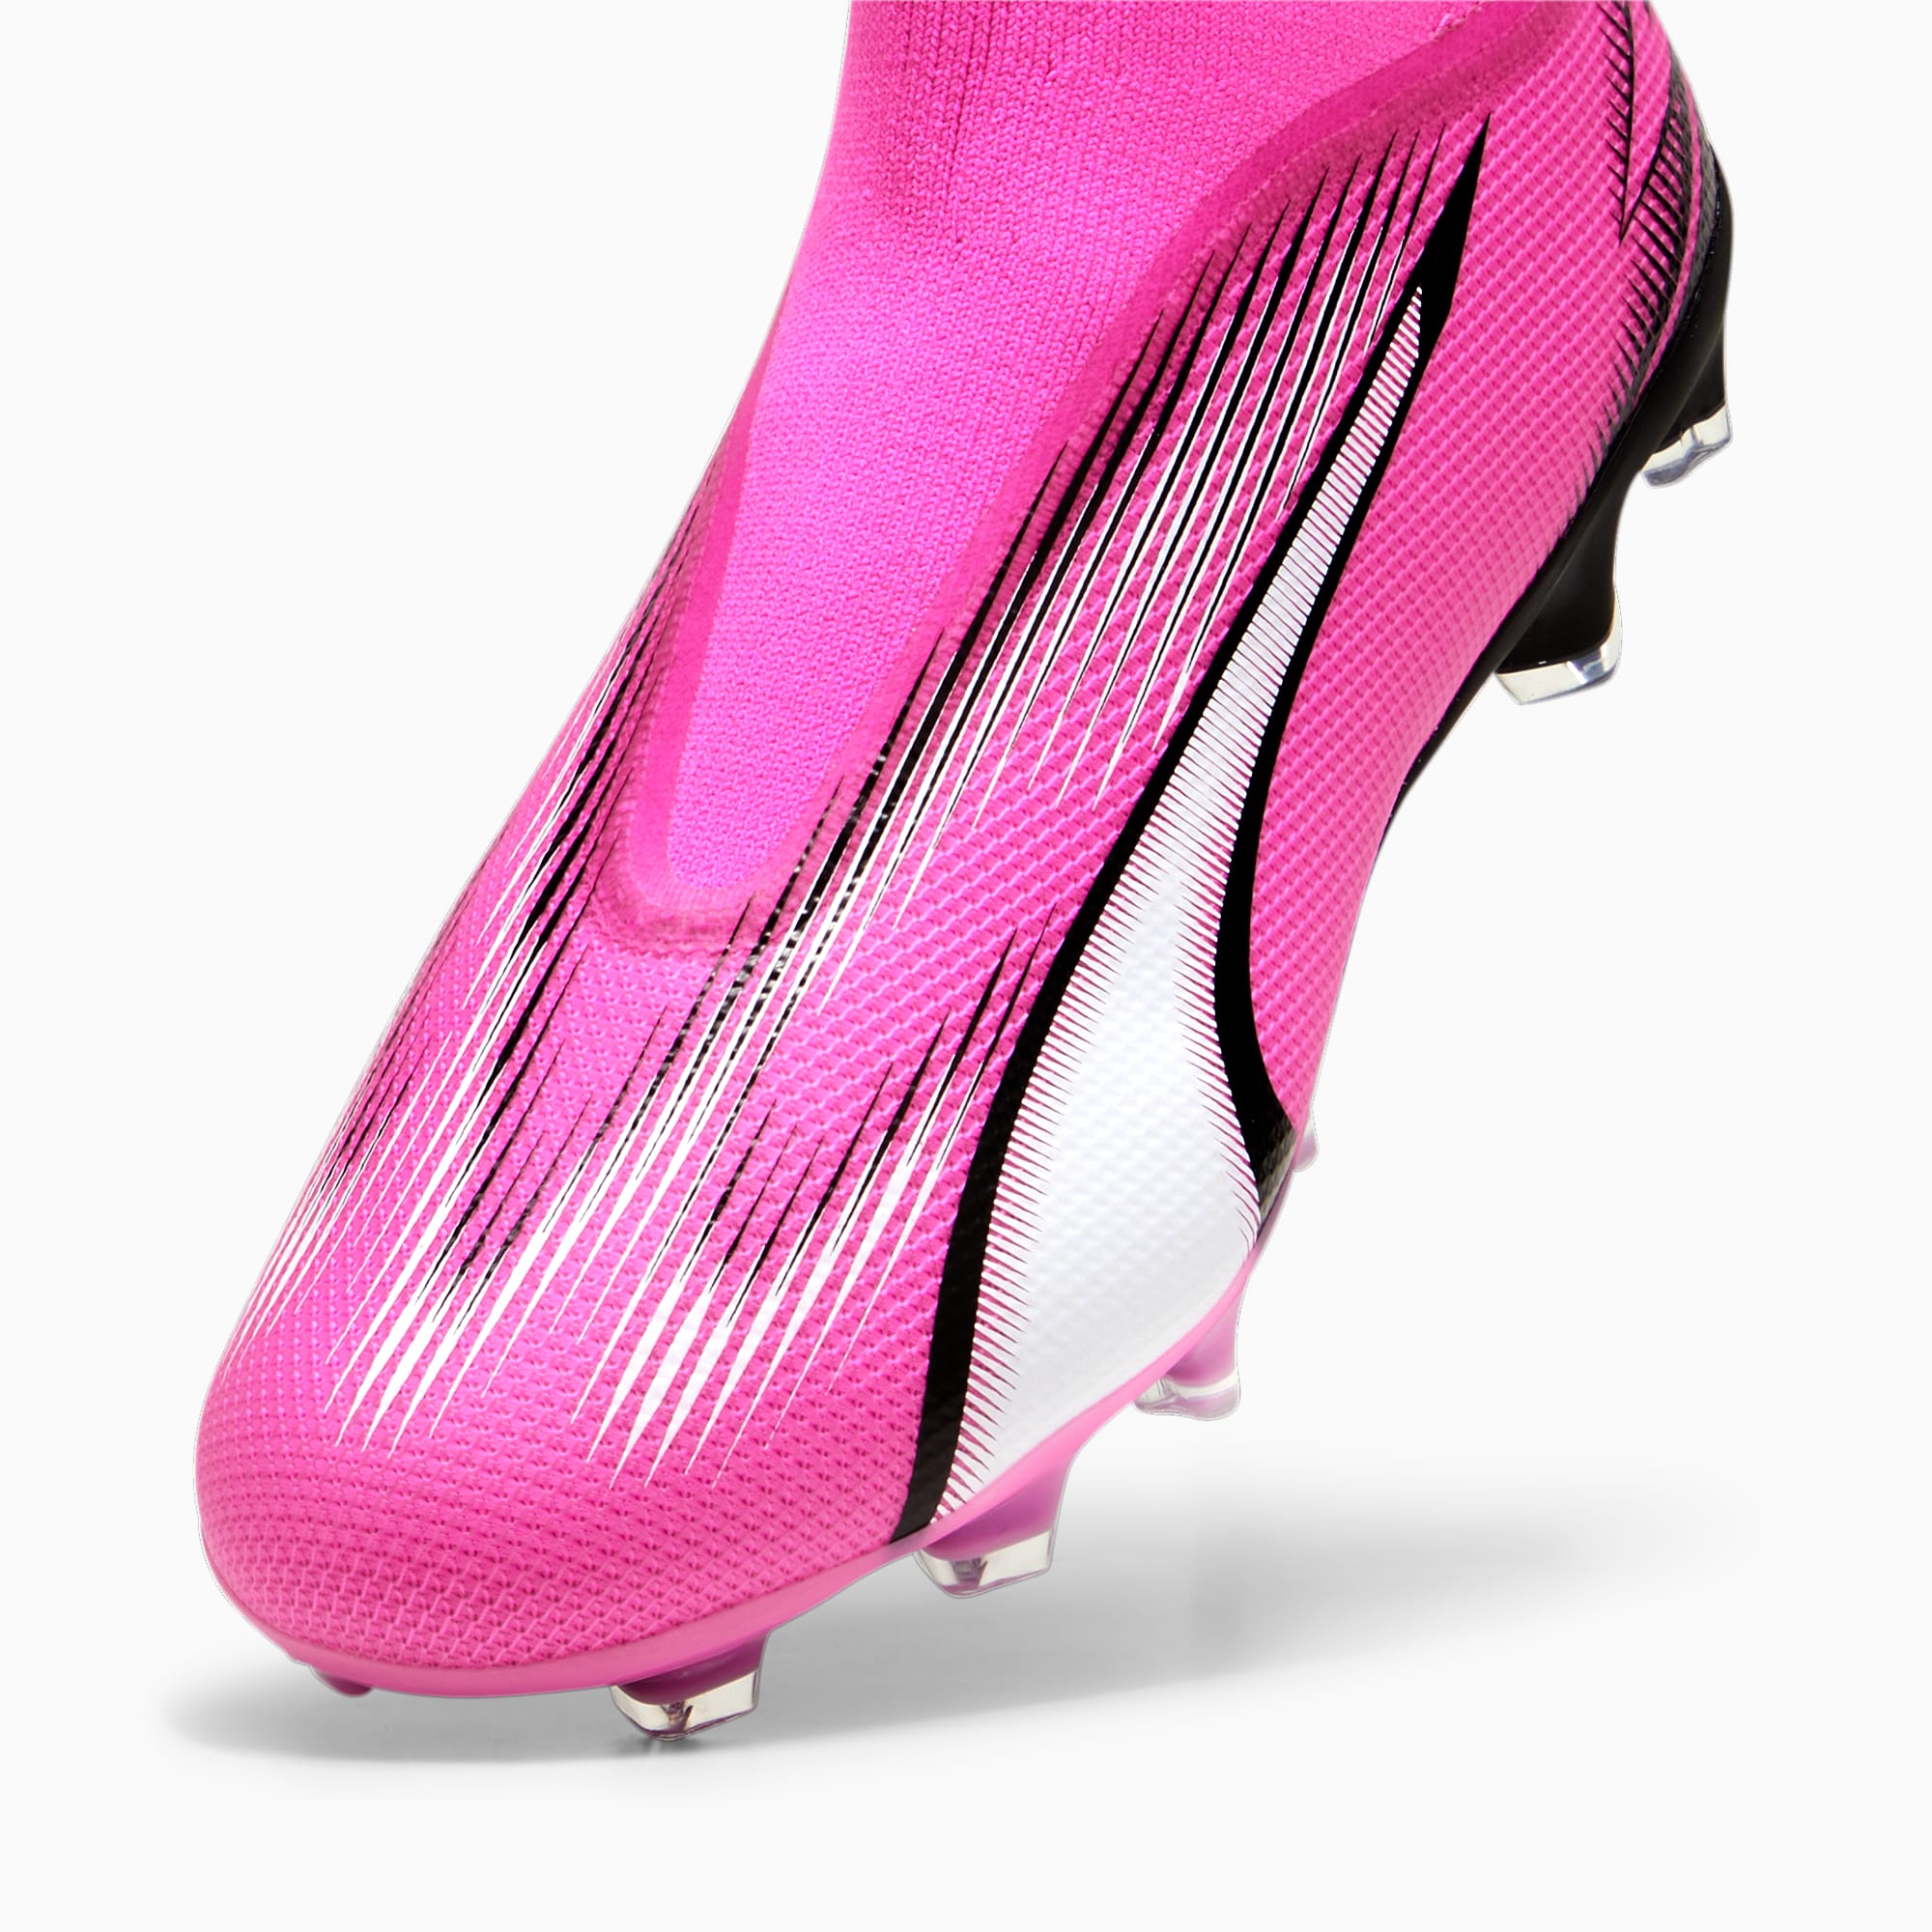 PUMA Chaussures De Football Sans Lacets ULTRA MATCH FG/AG Pour Homme, Rose/Noir/Blanc